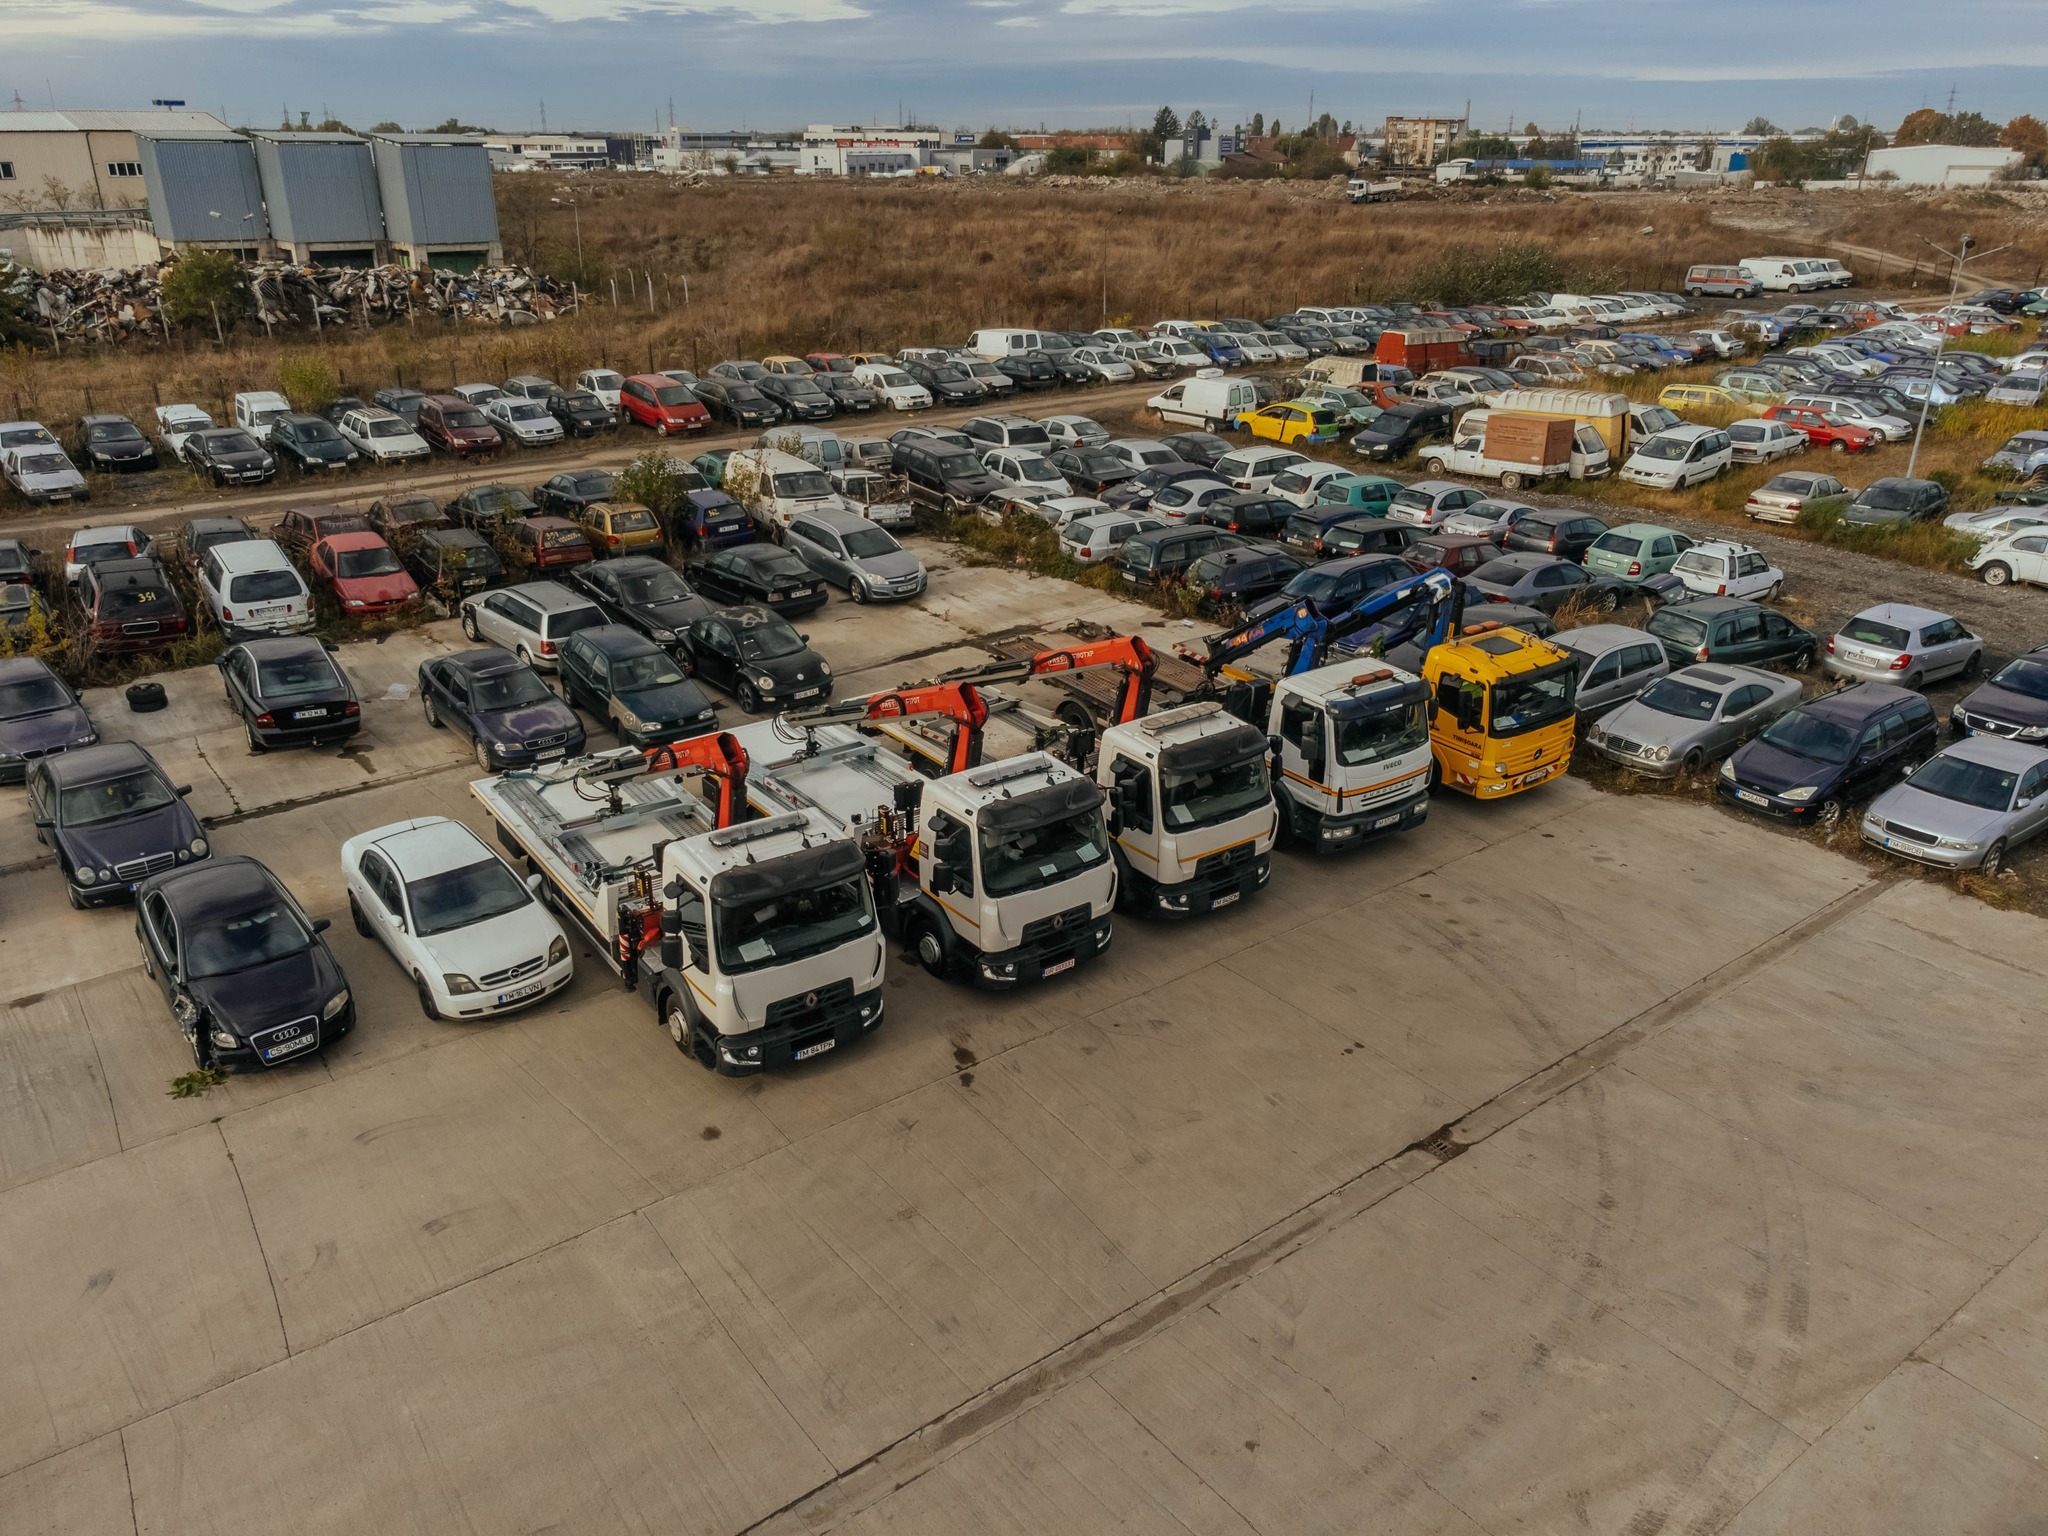 masini abandonate sau parcate ilegal la Timisoara